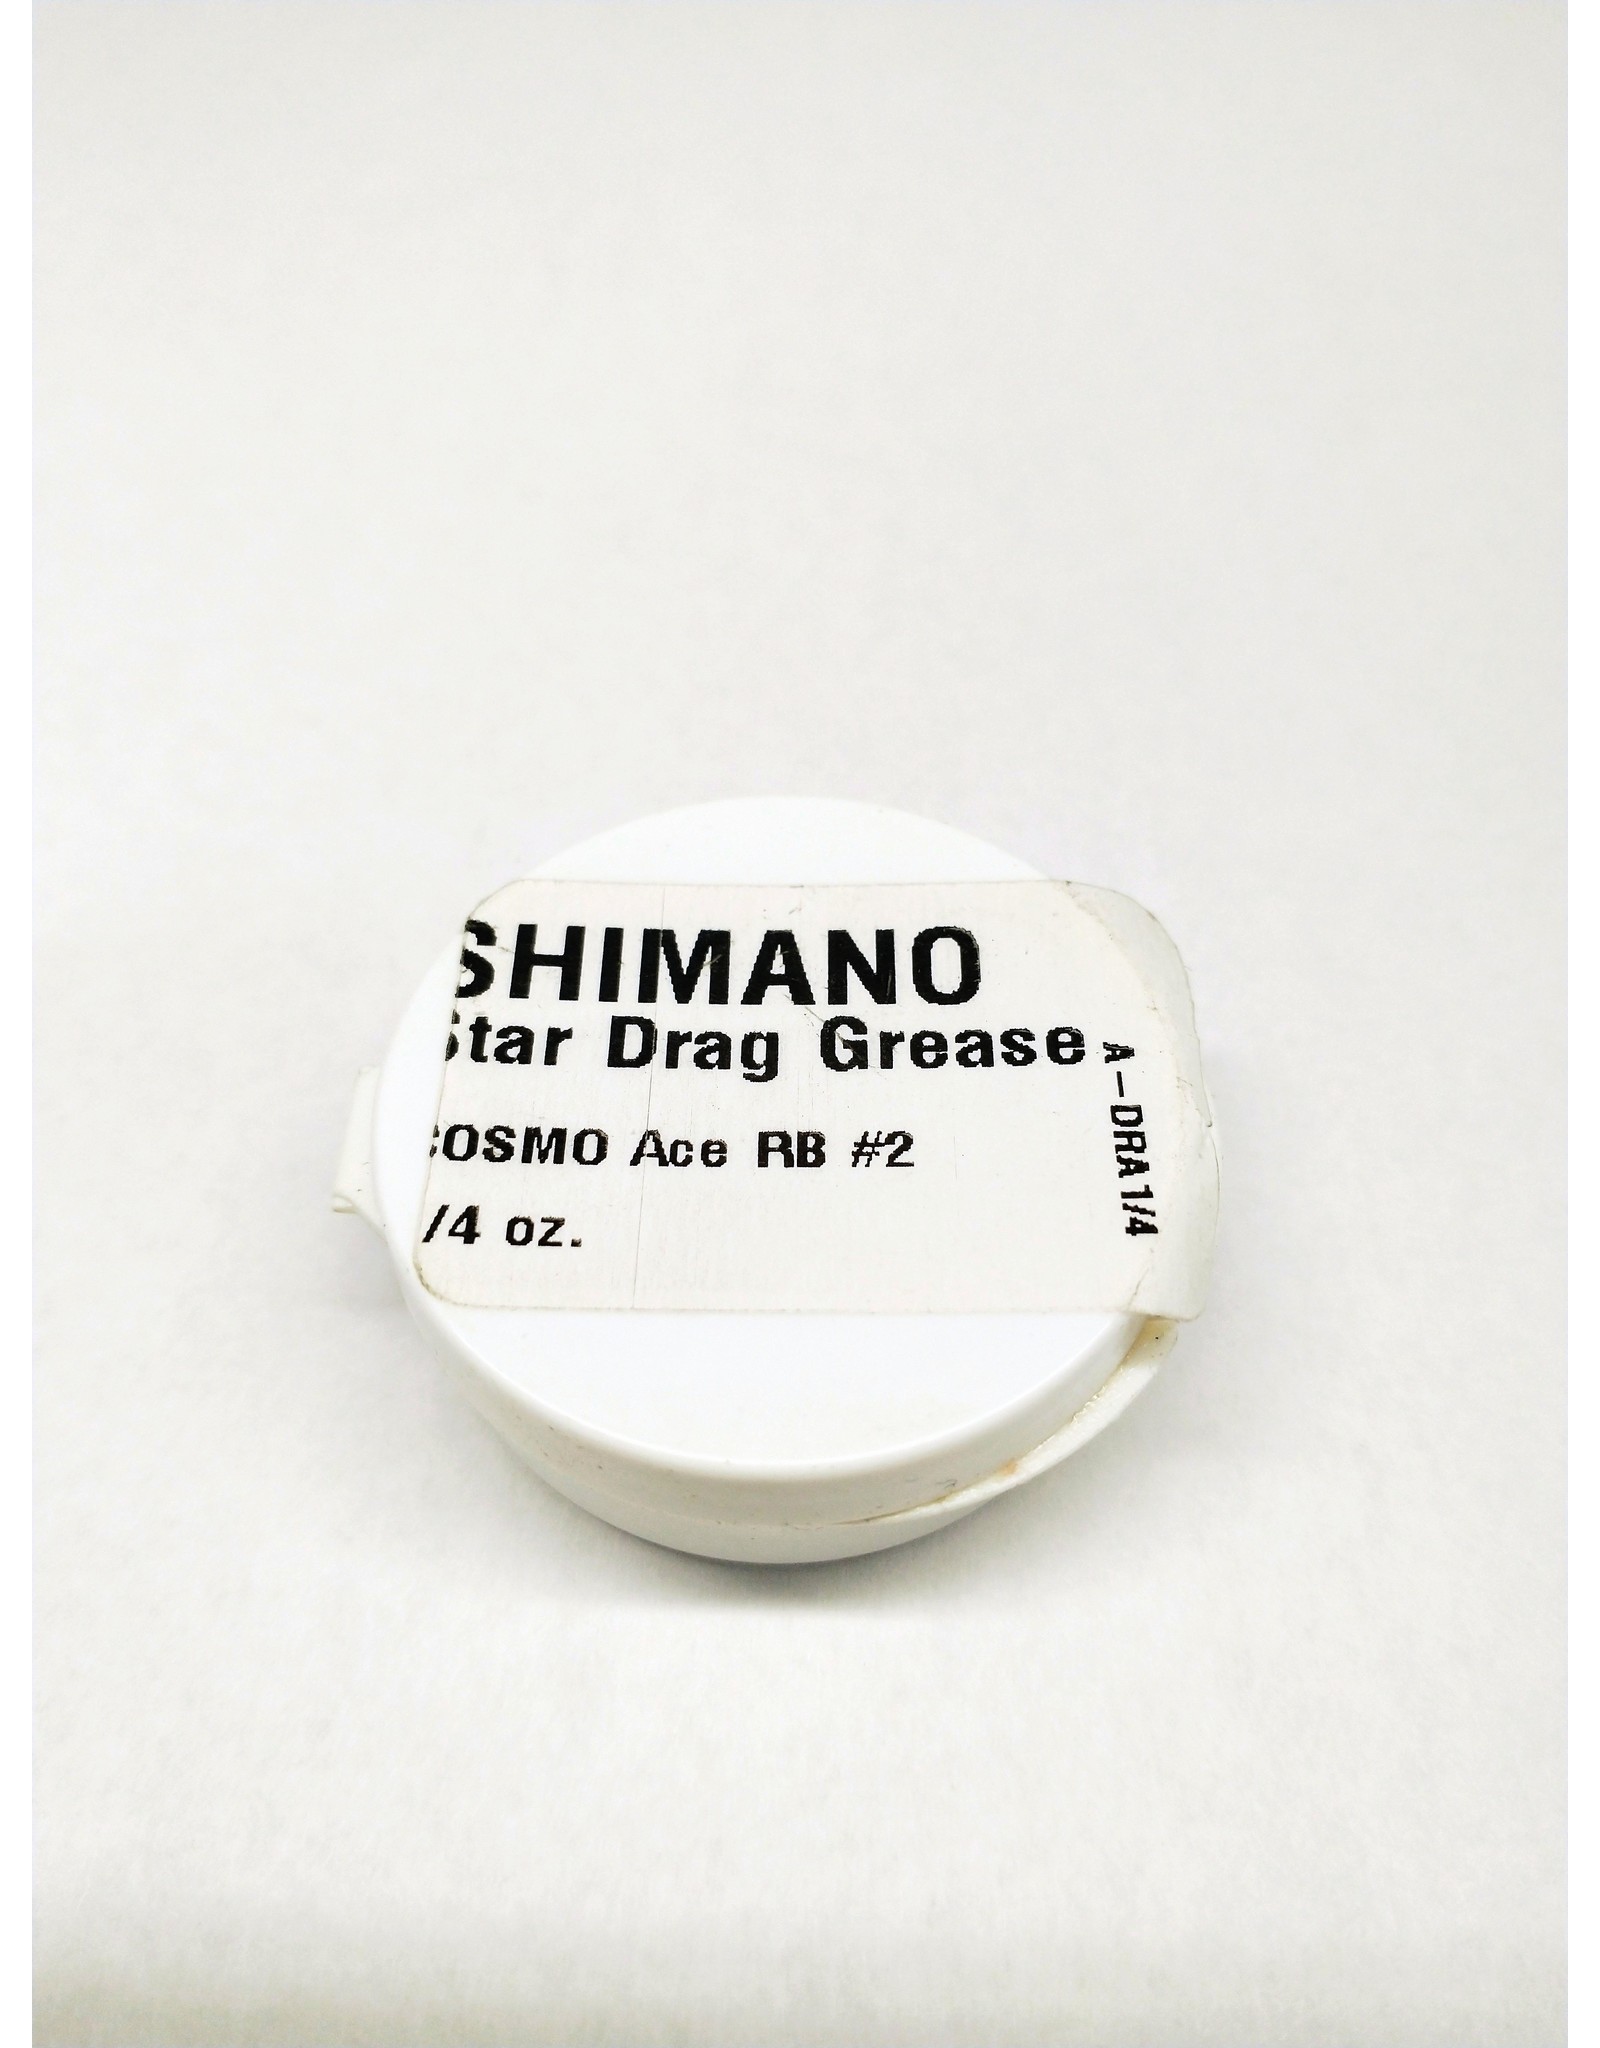 Shimano A-DRA1/4 STAR DRAG GREASE 1/4OZ